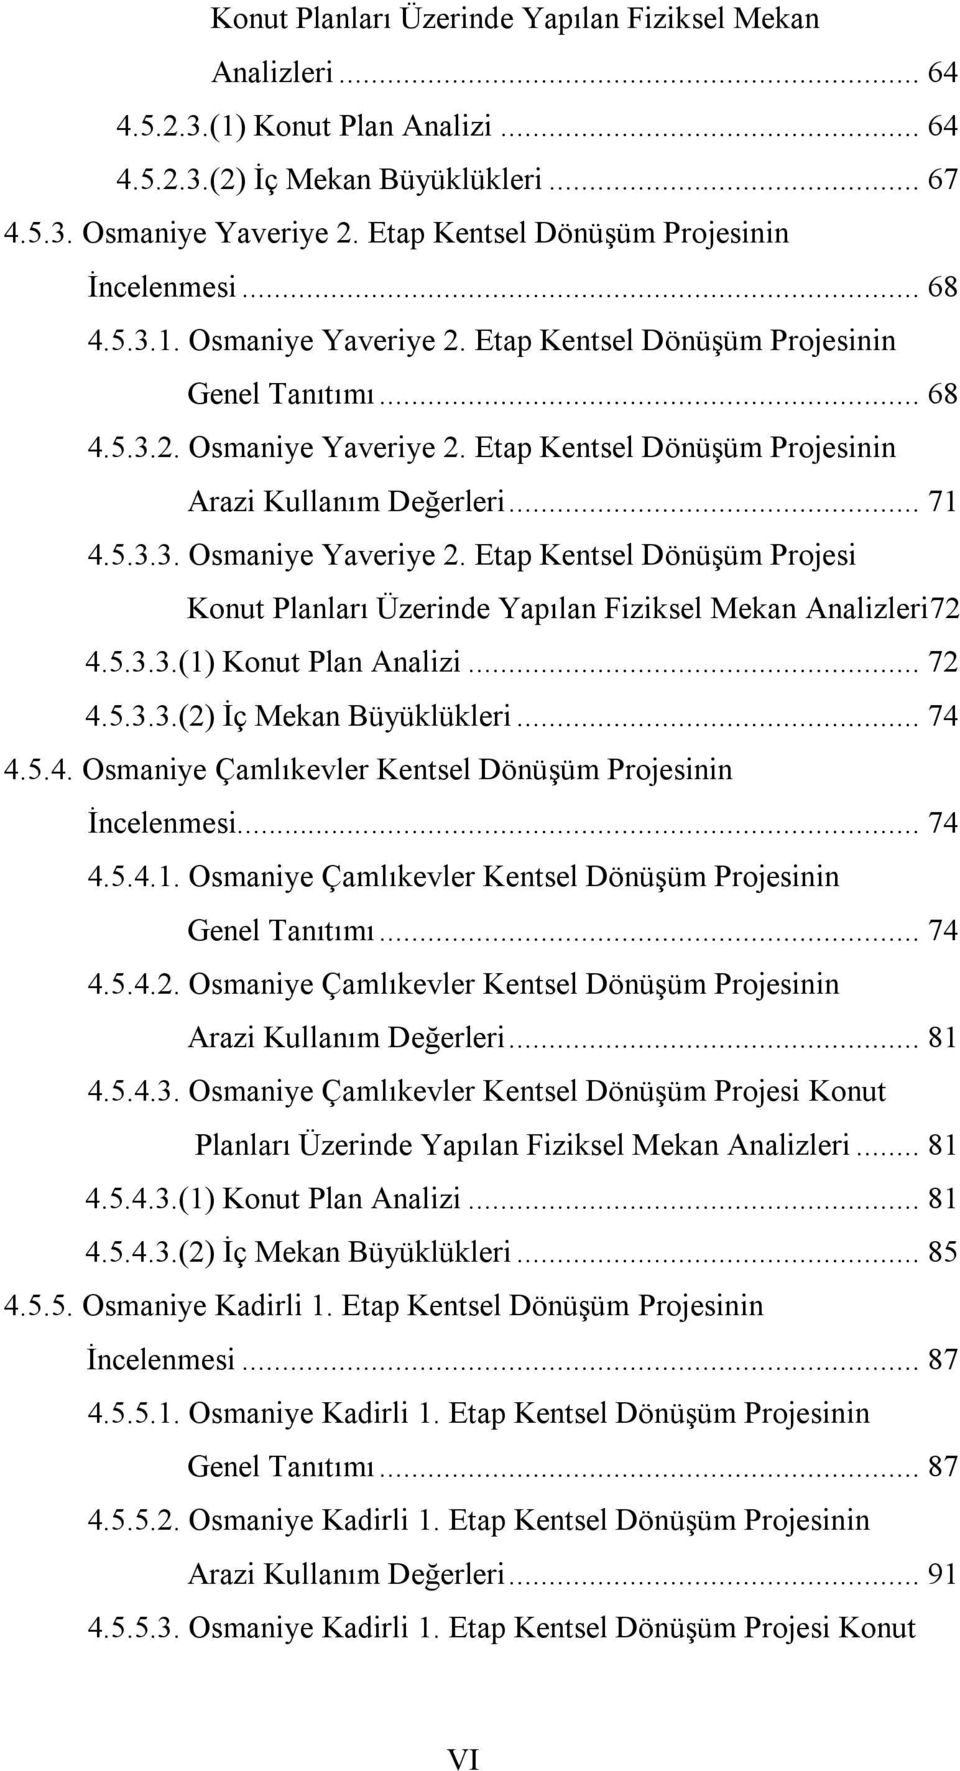 .. 71 4.5.3.3. Osmaniye Yaveriye 2. Etap Kentsel Dönüşüm Projesi Konut Planları Üzerinde Yapılan Fiziksel Mekan Analizleri72 4.5.3.3.(1) Konut Plan Analizi... 72 4.5.3.3.(2) İç Mekan Büyüklükleri.